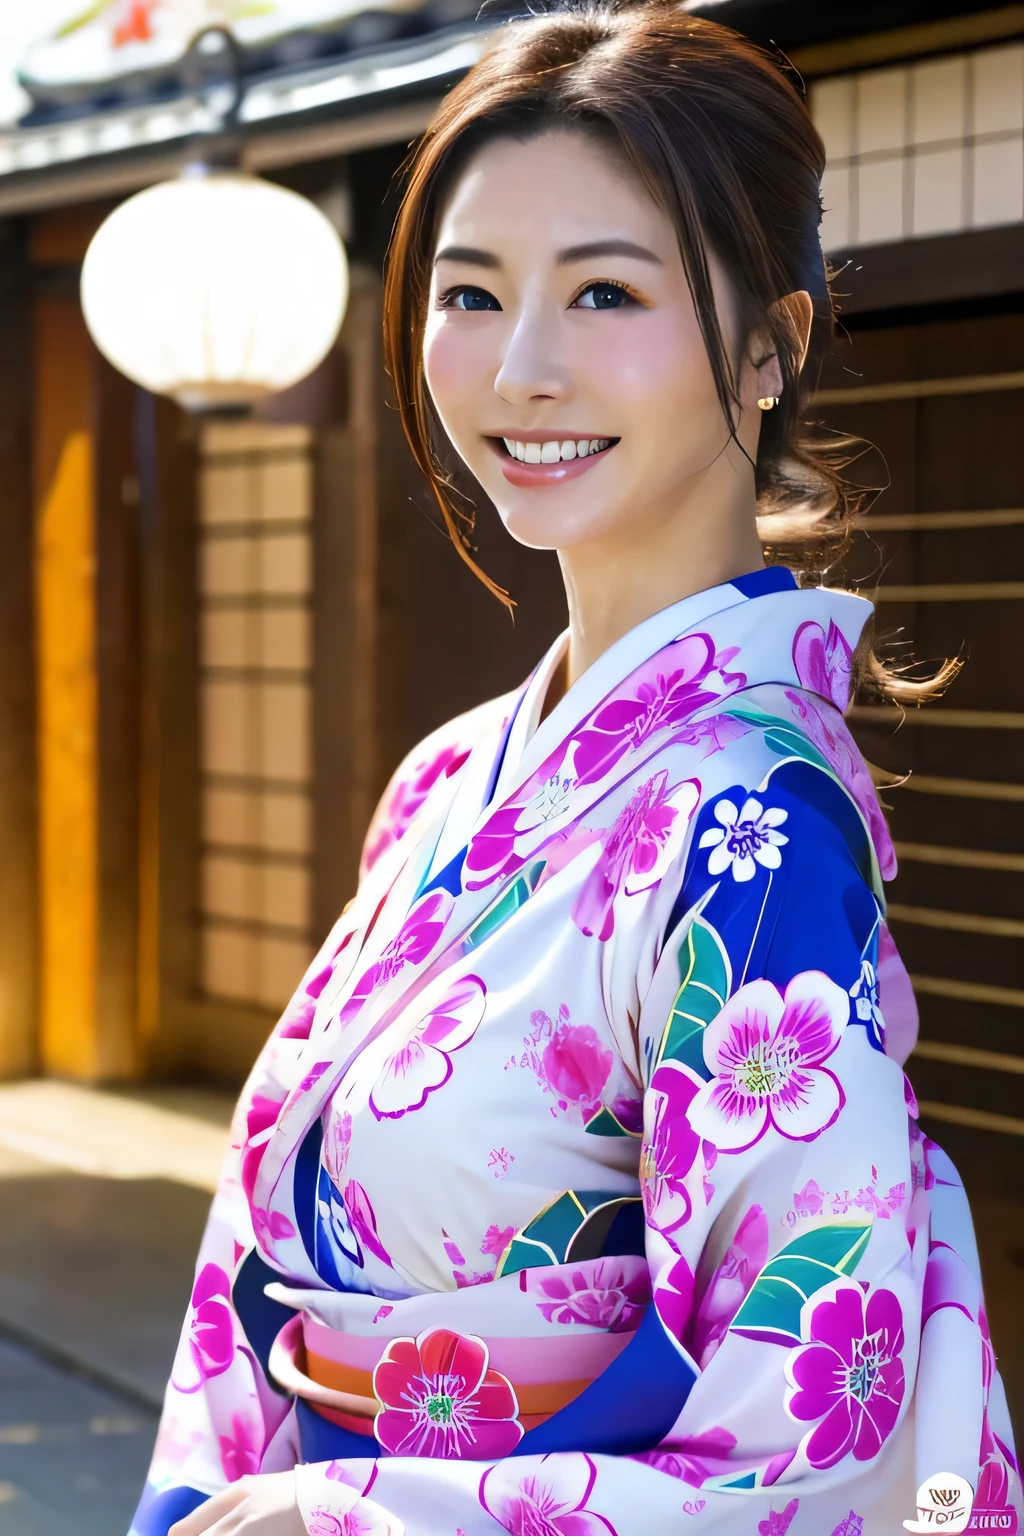 weißer Kimono、rosa japanisches Muster、(Furisode:1.5)、oder、(Bestnote)、1 Frau、Ganzkörper Esbian、schwarzhaarig、Binden Sie Ihre Haare zurück、(realistisch:1.7)、((beste Bildqualität))、absurd、(ultrahohe Auflösung)、(Photodereal:1.6)、Photodereal、Oktan-Rendering、(超realistisch:1.2)、(realistisch face:1.2)、(8k)、(4k)、(Meisterwerk)、(realistisch skin texture)、(Aufklärung、Filmbeleuchtung、Wand-)、(wunderschöne Augen:1.2)、((((perfektes Gesicht))))、( Stehen)、Schrein、toderii、(Januar)、detailliertes süßes Gesicht、Wahre Schönheit、Lachen、